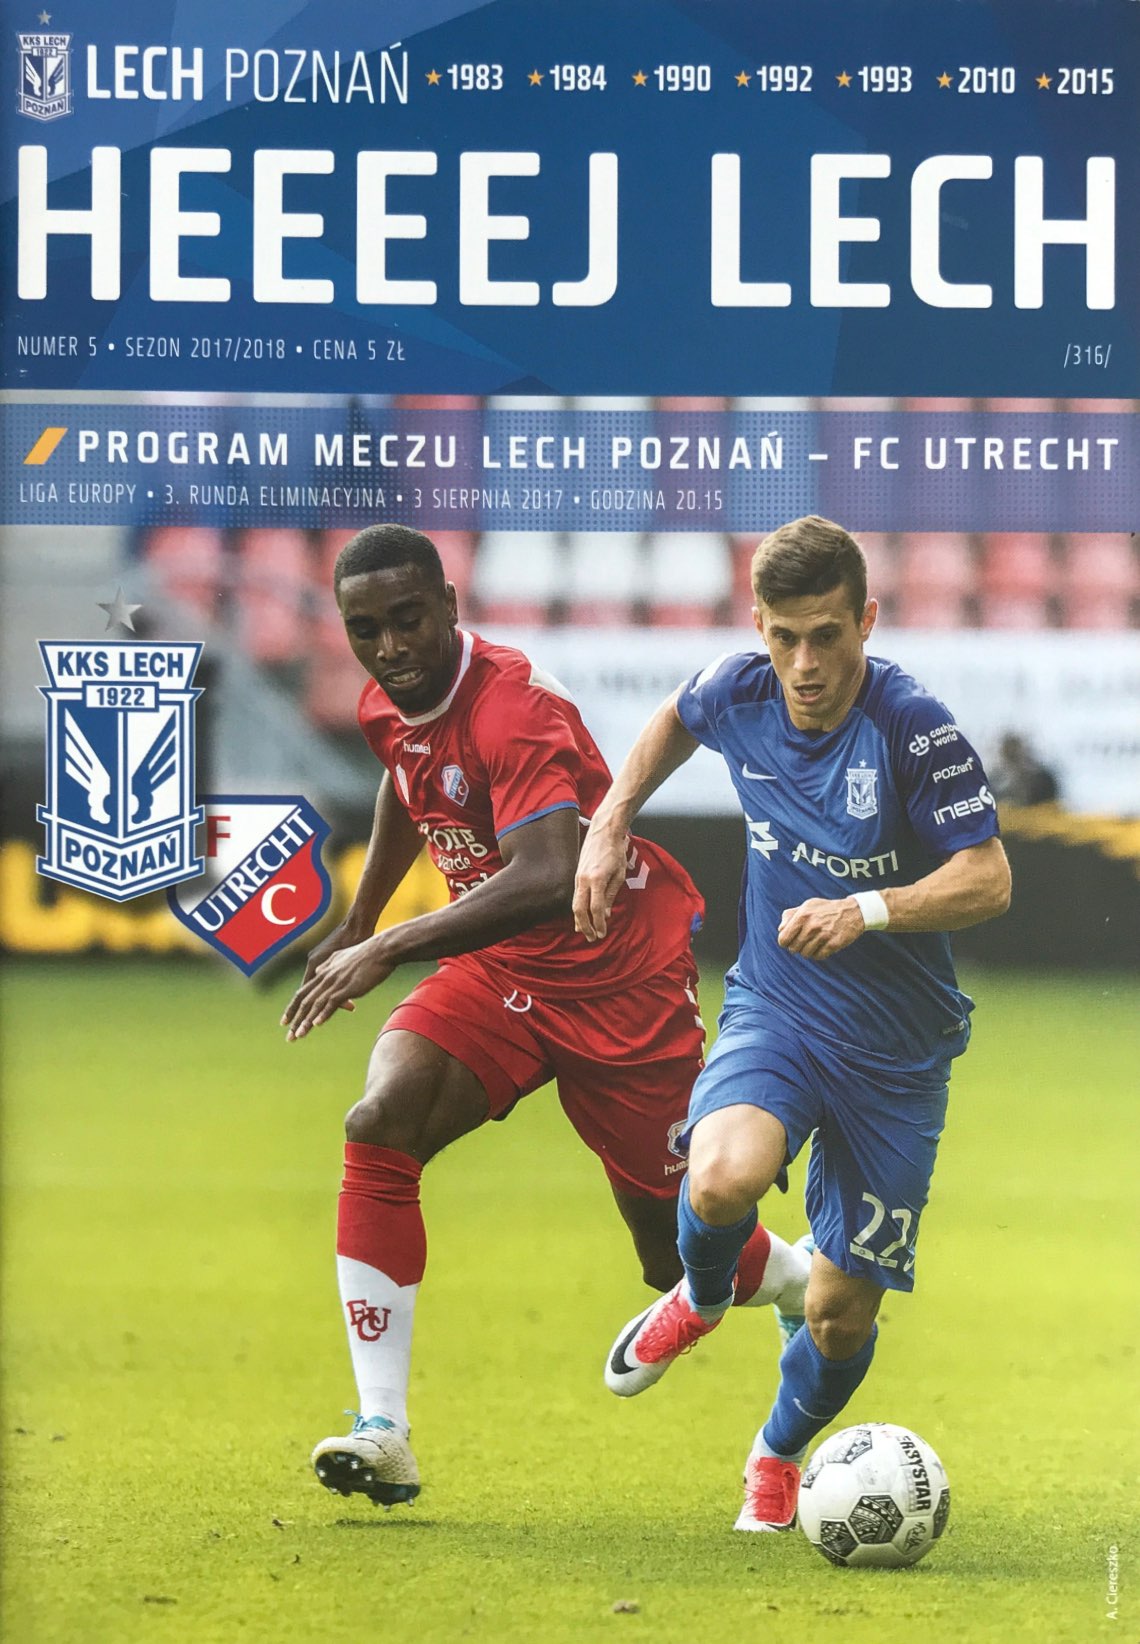 Program meczowy Lech Poznań - FC Utrecht 2:2 (03.08.2017)